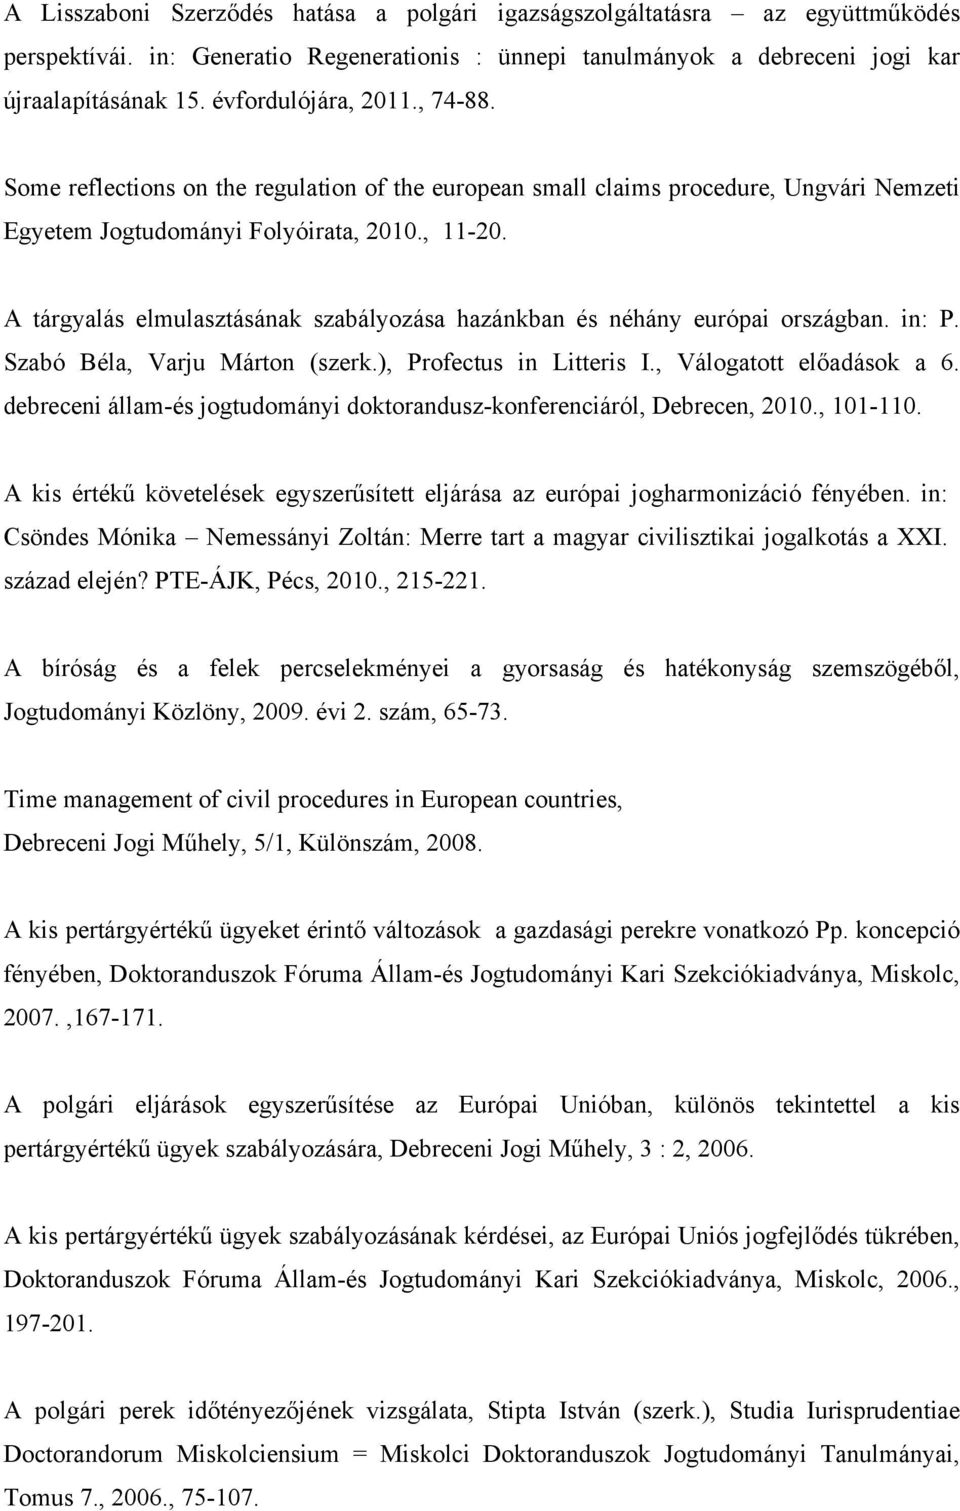 A tárgyalás elmulasztásának szabályozása hazánkban és néhány európai országban. in: P. Szabó Béla, Varju Márton (szerk.), Profectus in Litteris I., Válogatott előadások a 6.